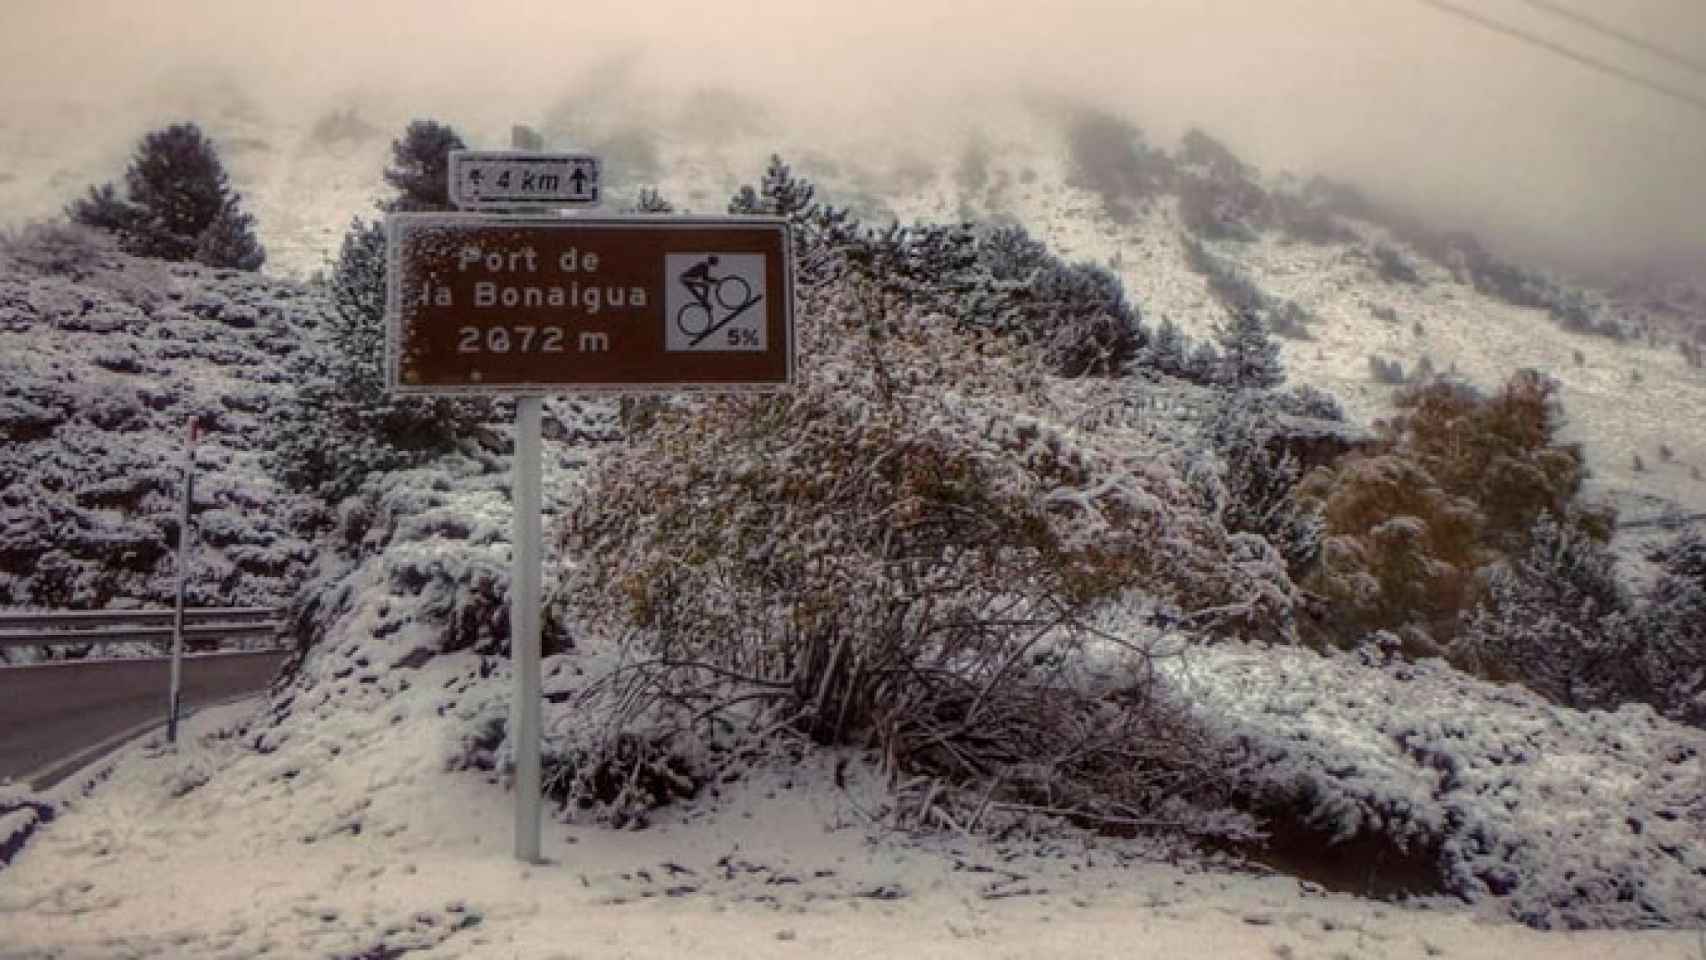 Carretera hacia el Port de la Bonaigua, en los Pirineos, cubierta de nieve / TWITTER